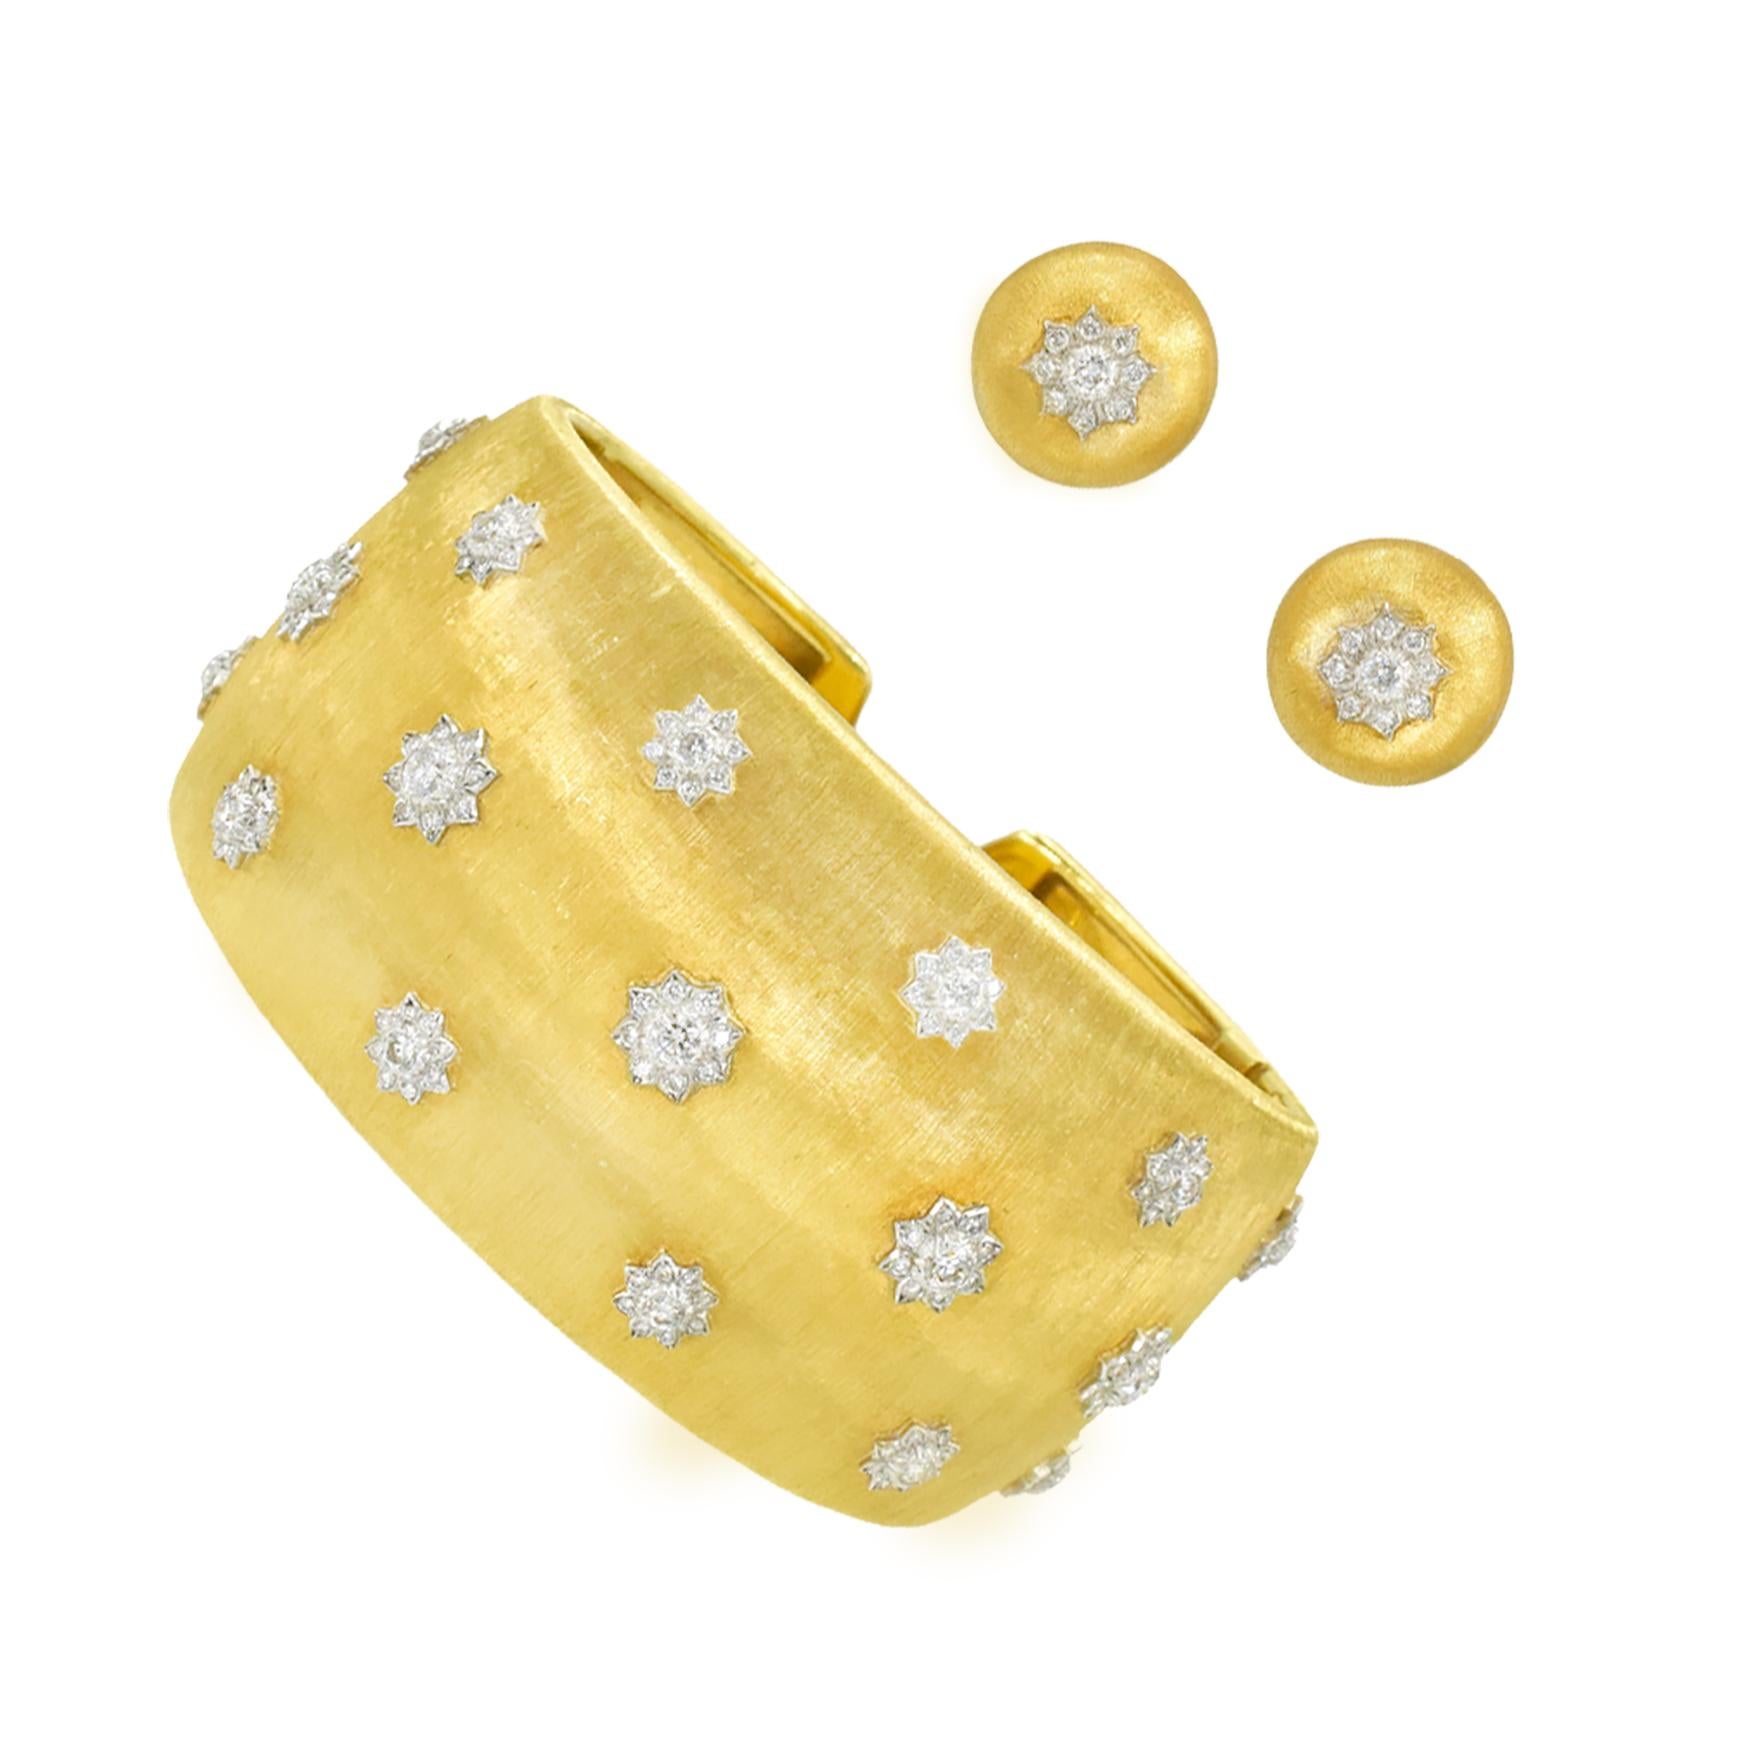 Buccellati 'Macri' Armband und Ohrclip aus 18 Karat Gelb- und Weißgold mit Diamantbesatz. Das Set
armband und Ohrringe aus 18-karätigem Gelbgold in Kuppelform mit Buccellati-Signatur
gebürstetem Finish, mit Diamanten, die in der Mitte der Ohrringe